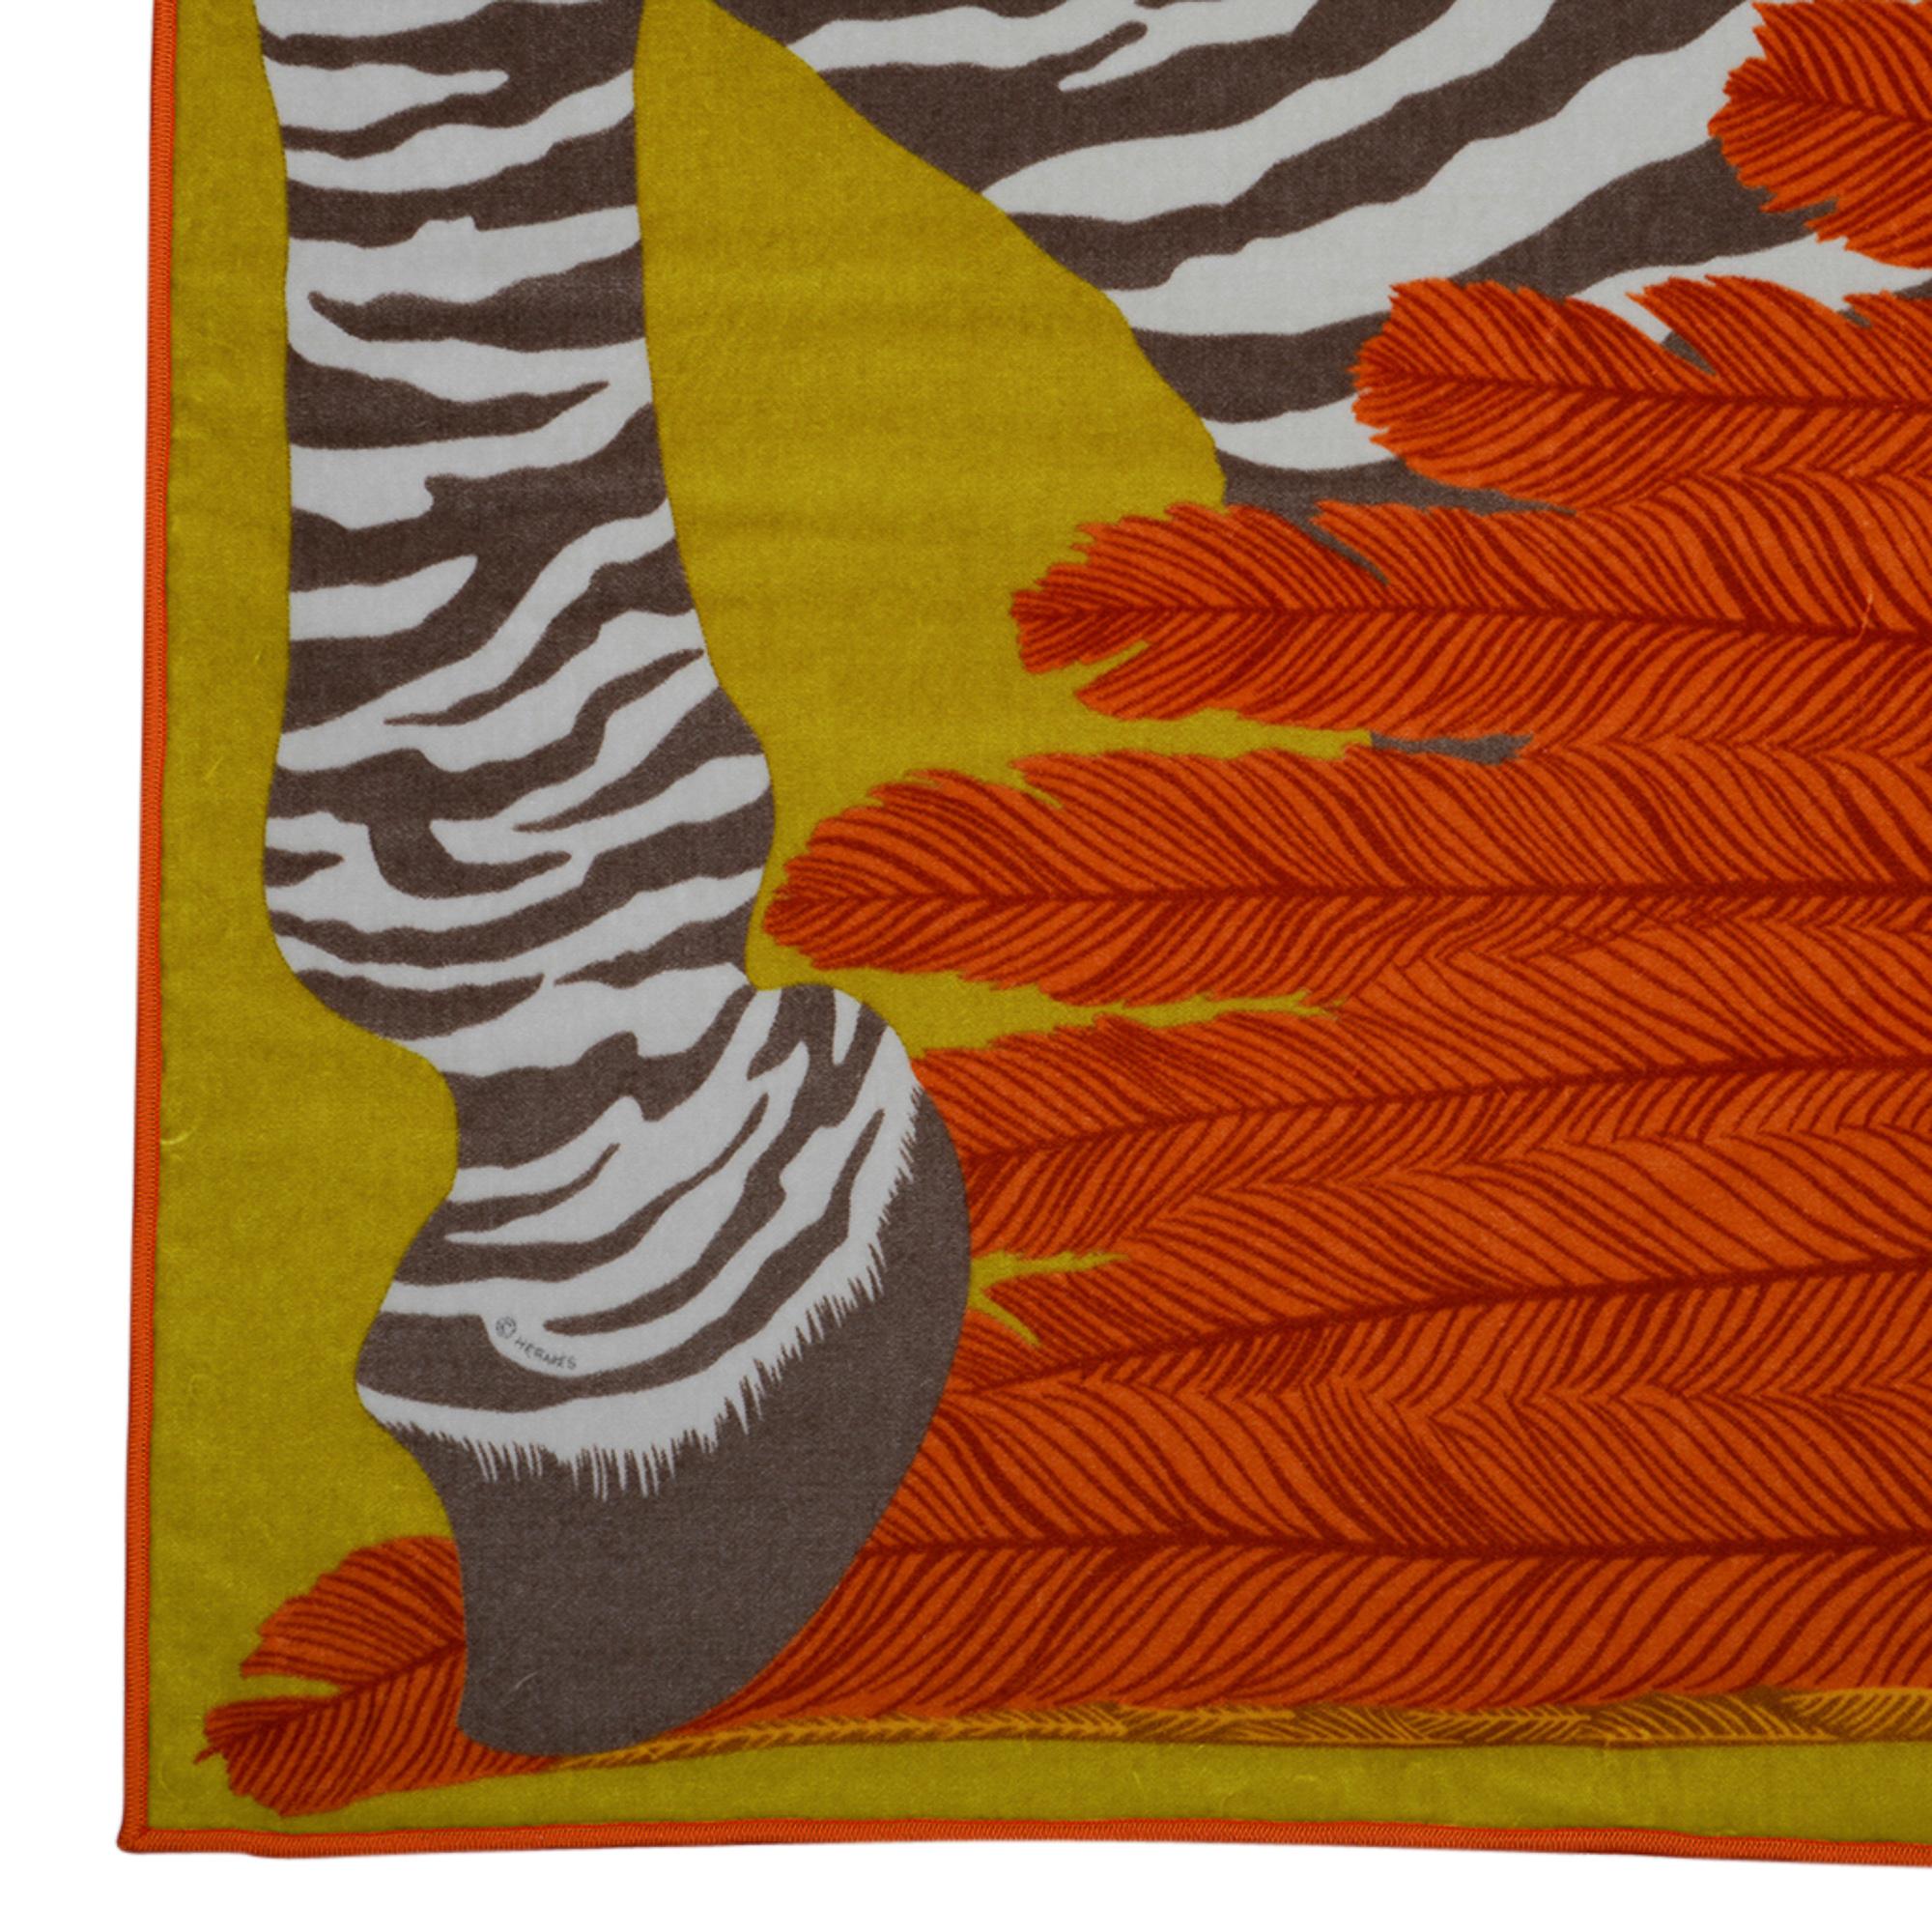 Hermes Blanket Jete de Canape Zebra Pegase Orange / Green Multicolore New 1